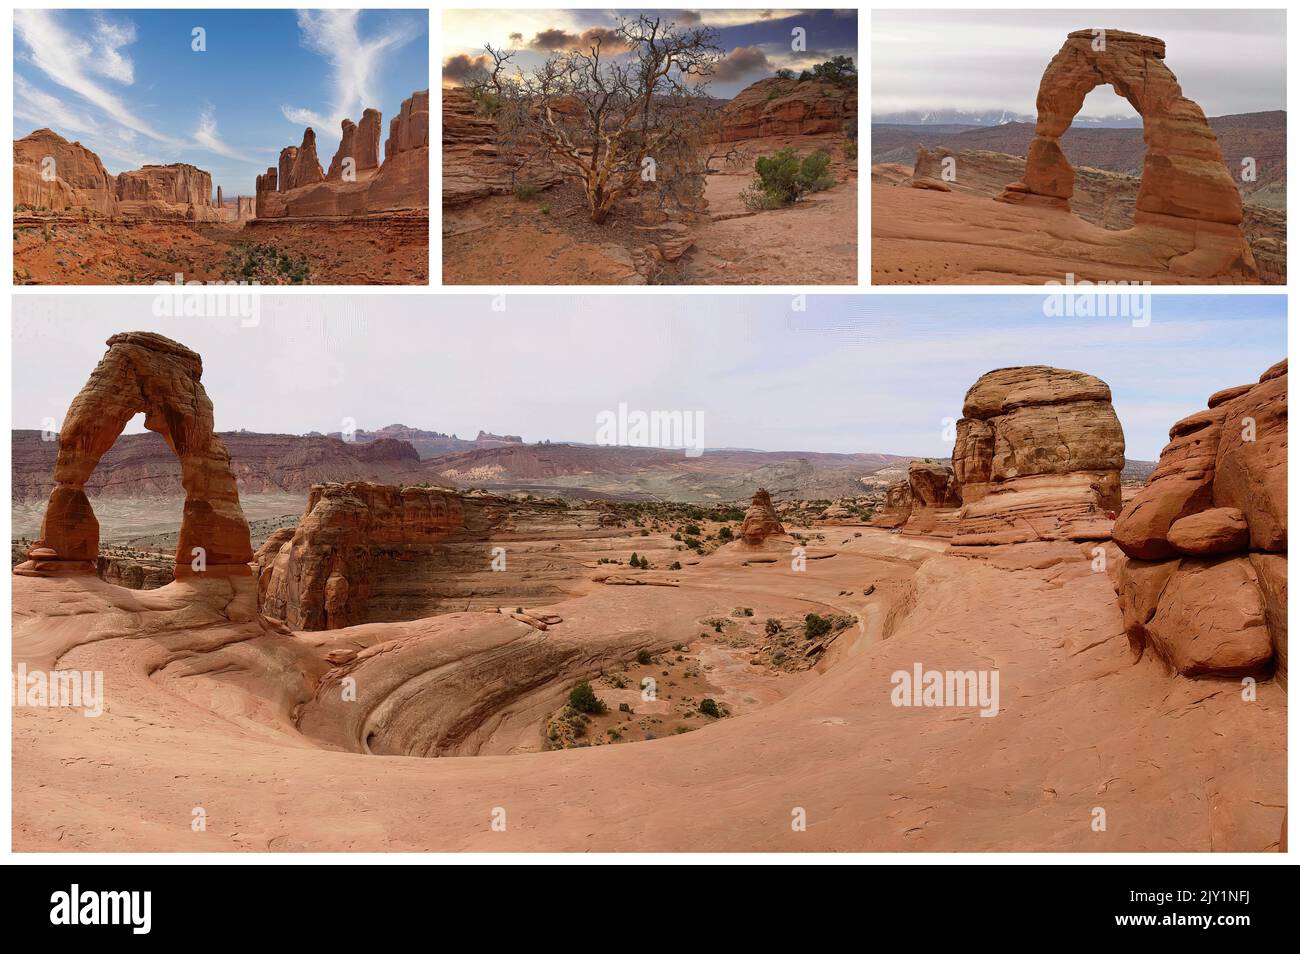 L'iconica Monument Valley, Arizona, uno dei simboli degli Stati Uniti e del vecchio e selvaggio West, ora riserva indiana Navajo (1) Foto Stock